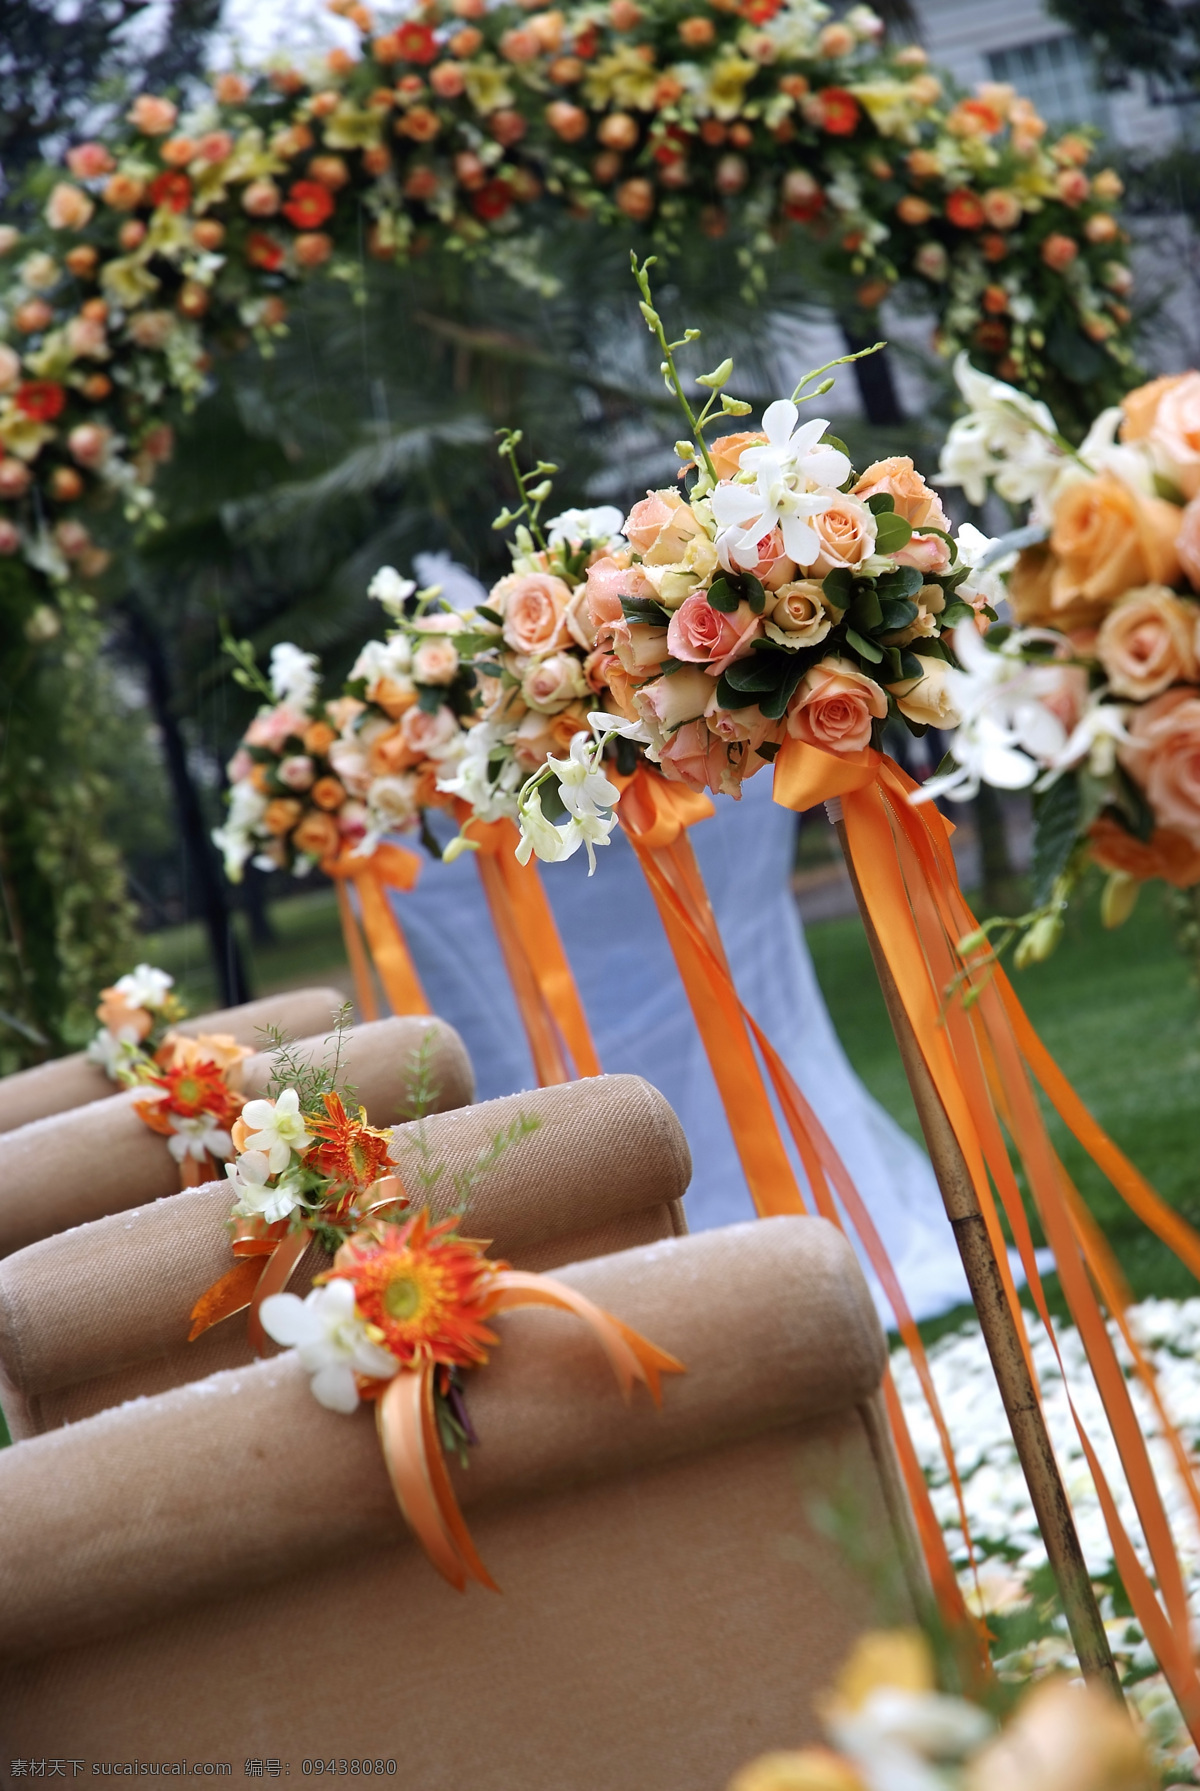 婚礼布置 婚礼现场布置 花束 花球 座位 文化艺术 摄影图库